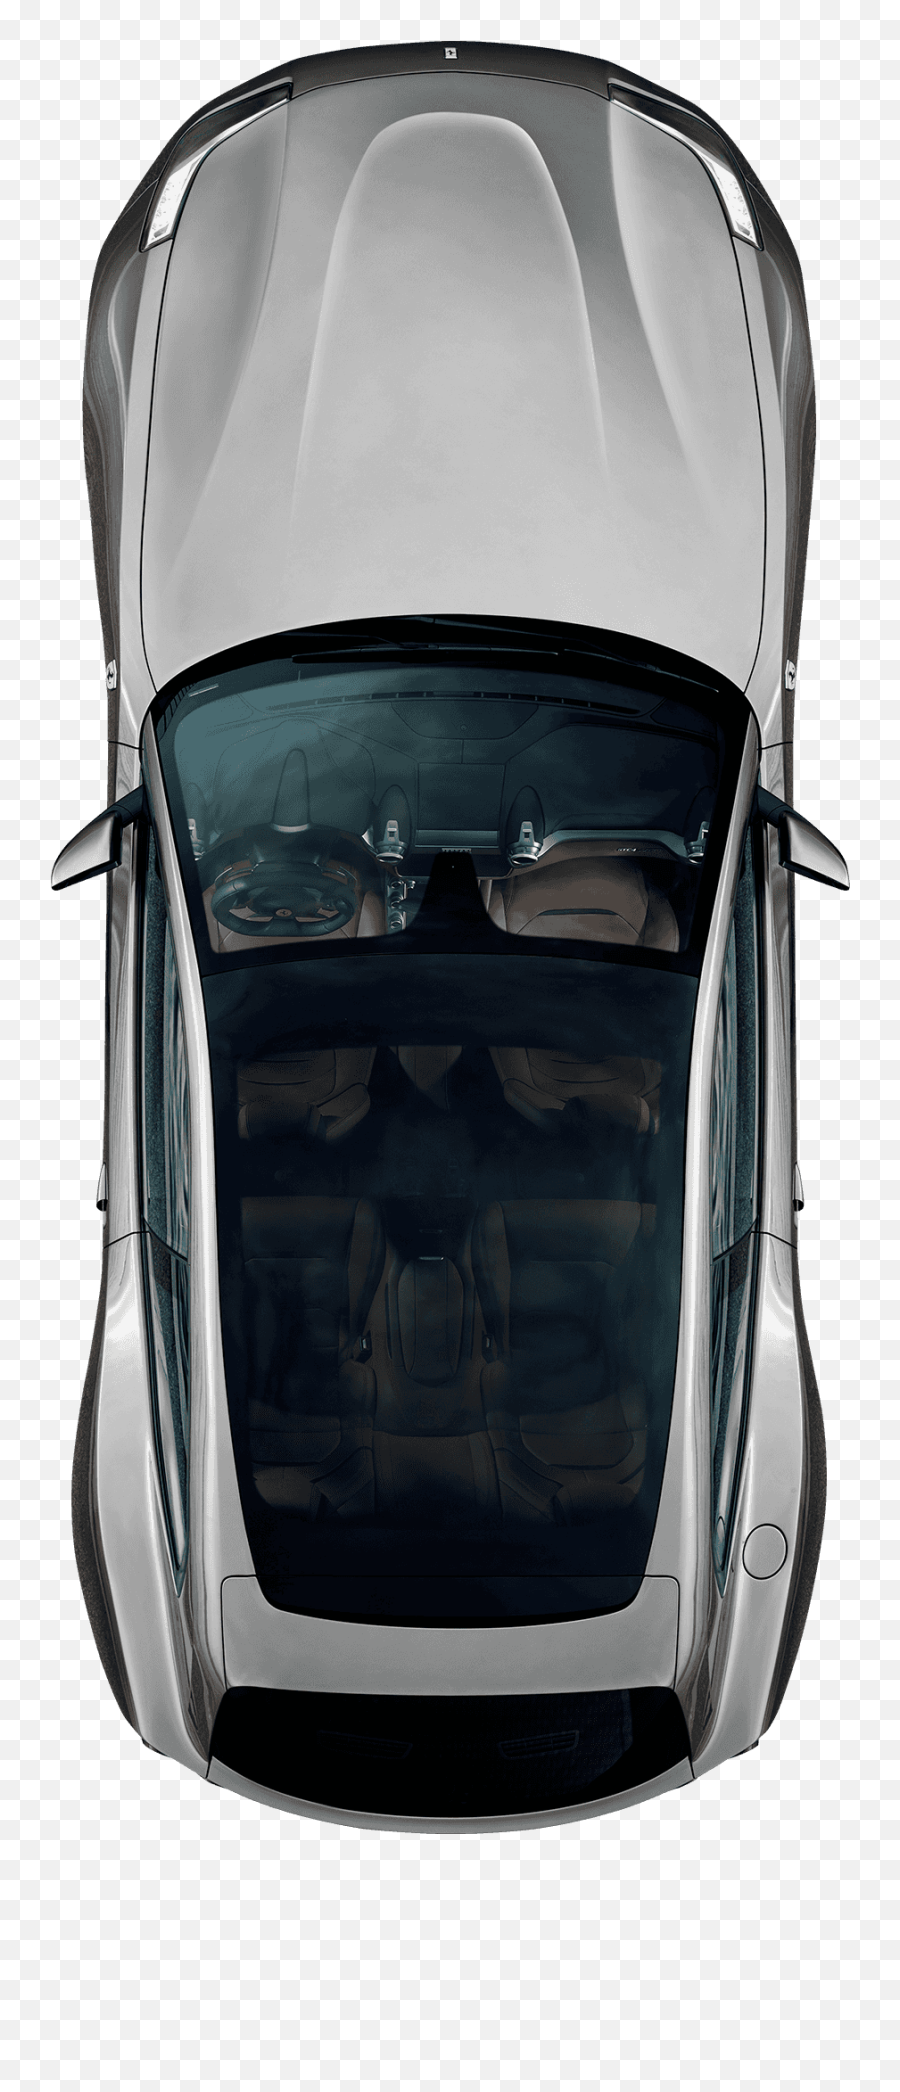 Download Hd Car Top View Ferrari - Animated Car Top View Car From Top View Png,Car Top Png